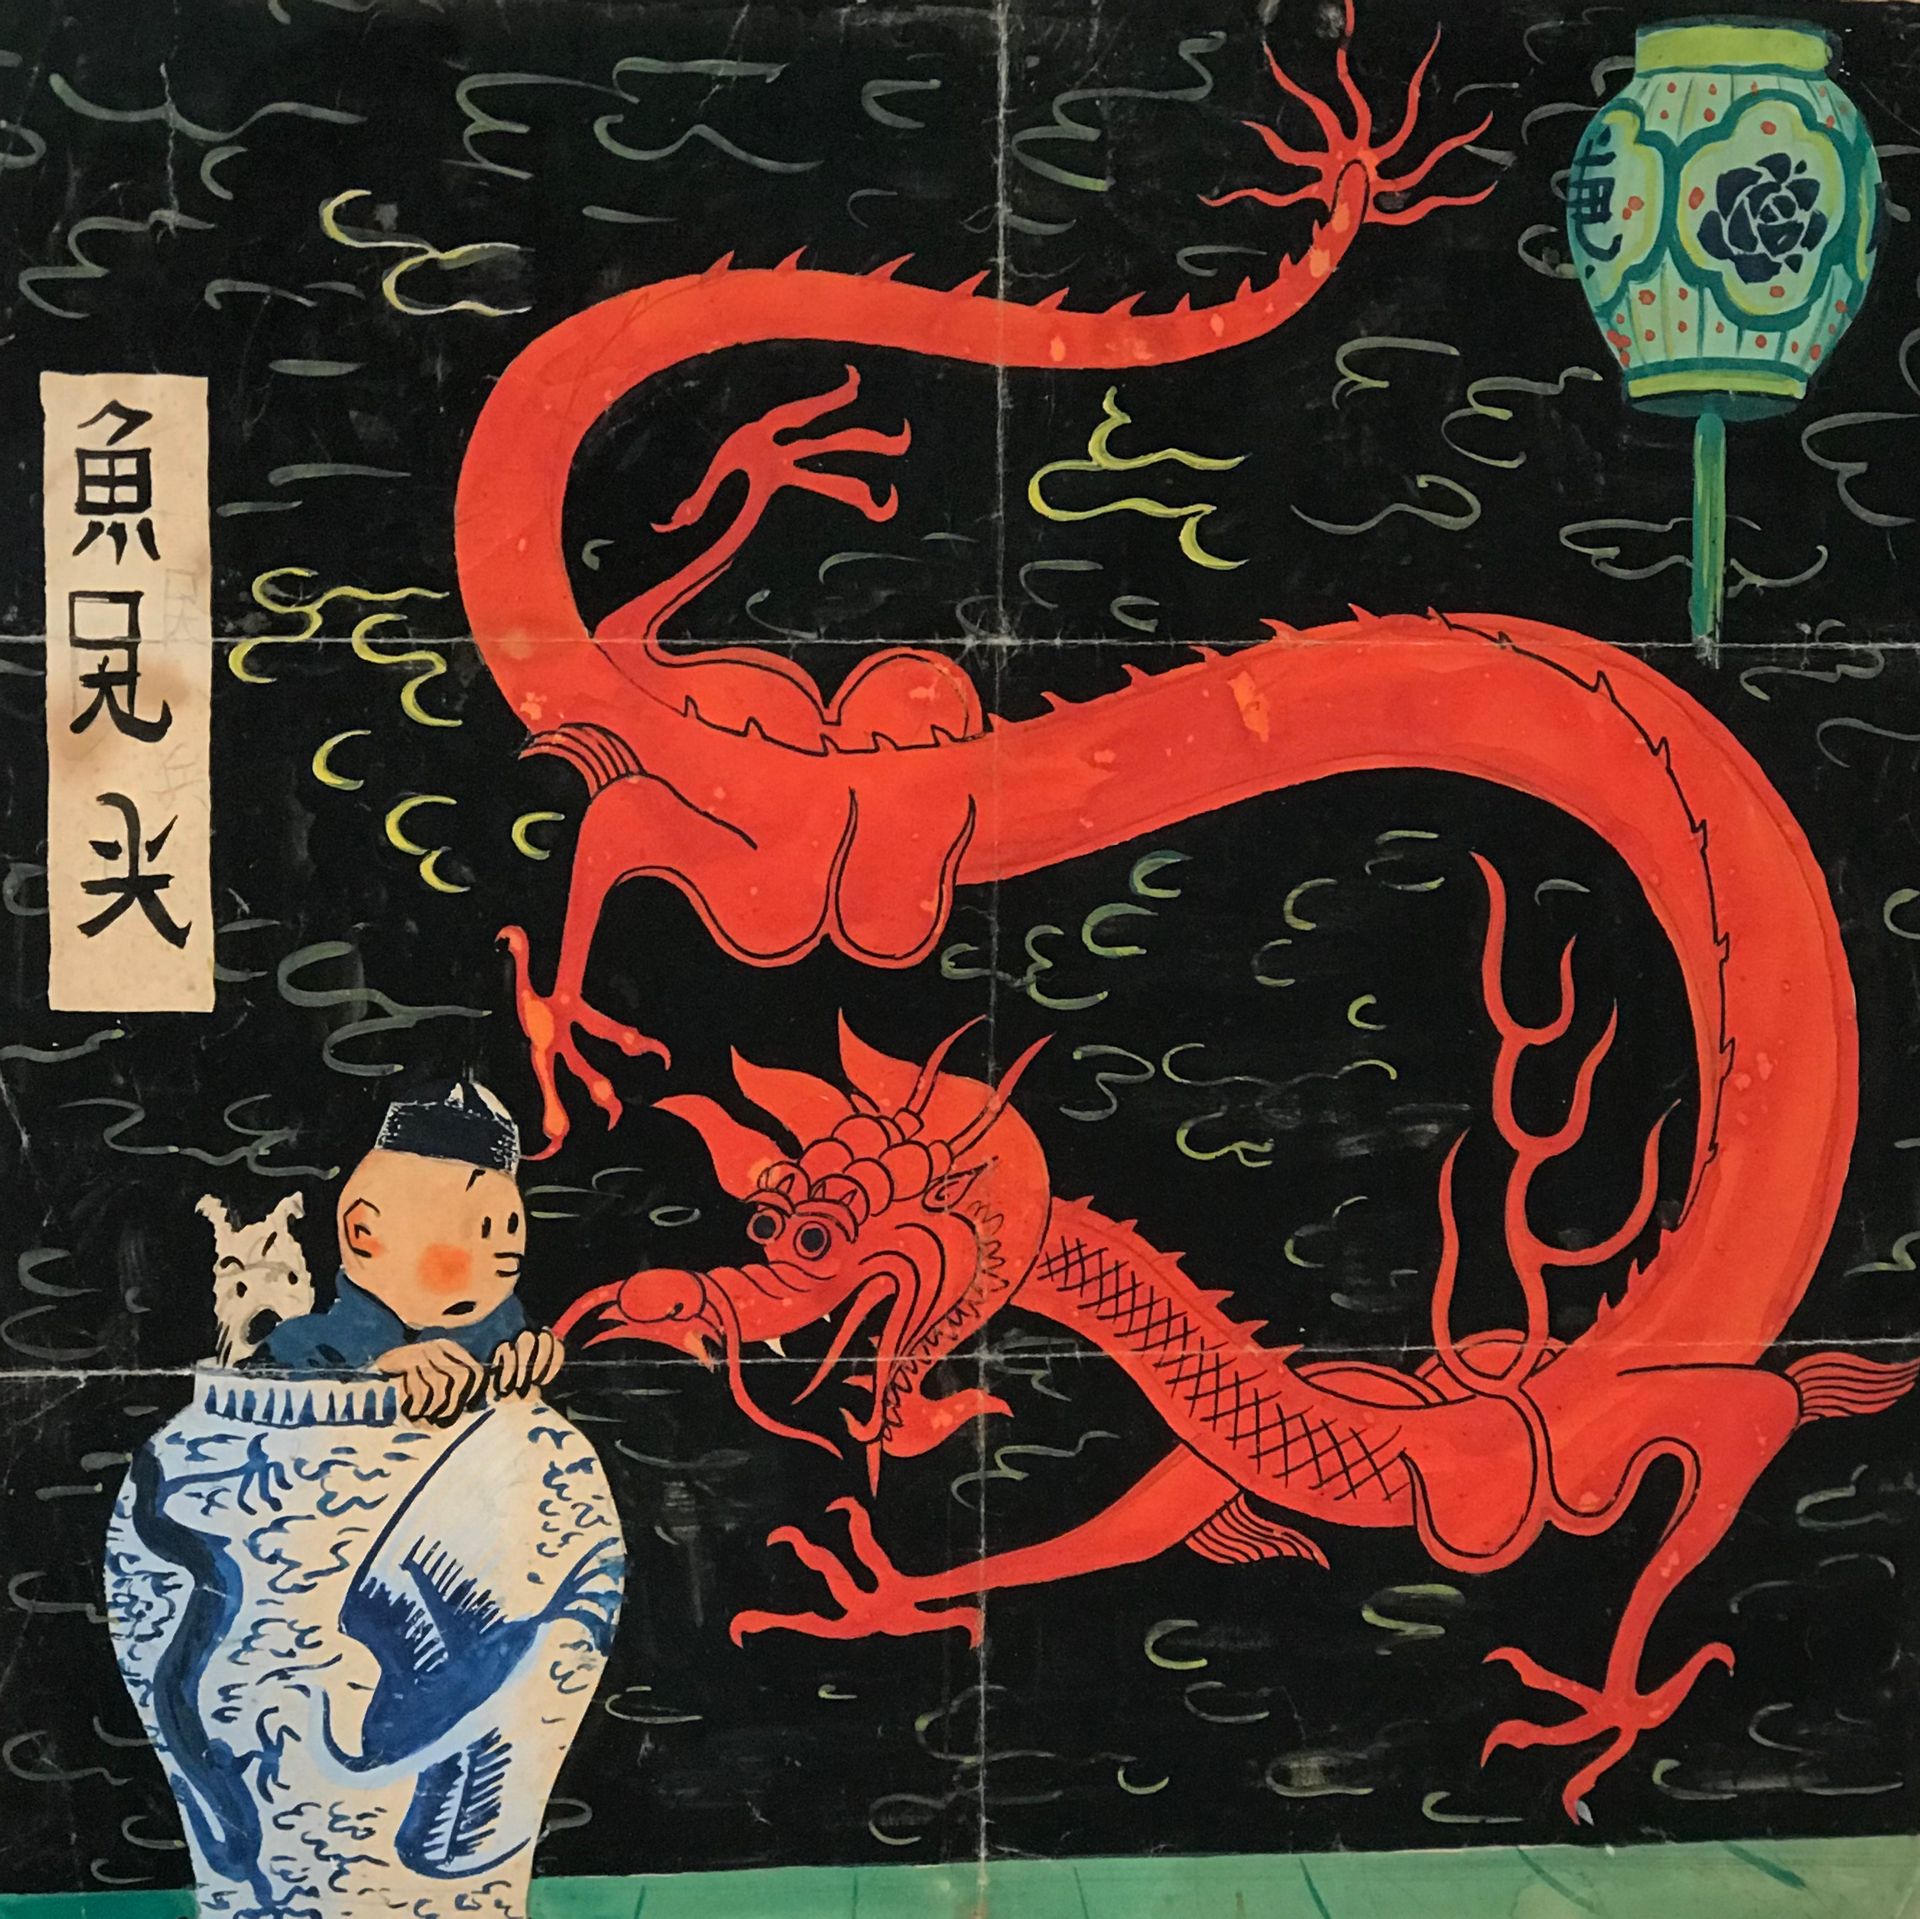 Une couverture inédite de Tintin aux enchères: l'incroyable histoire derrière ce chef-d'œuvre estimé à 3M €